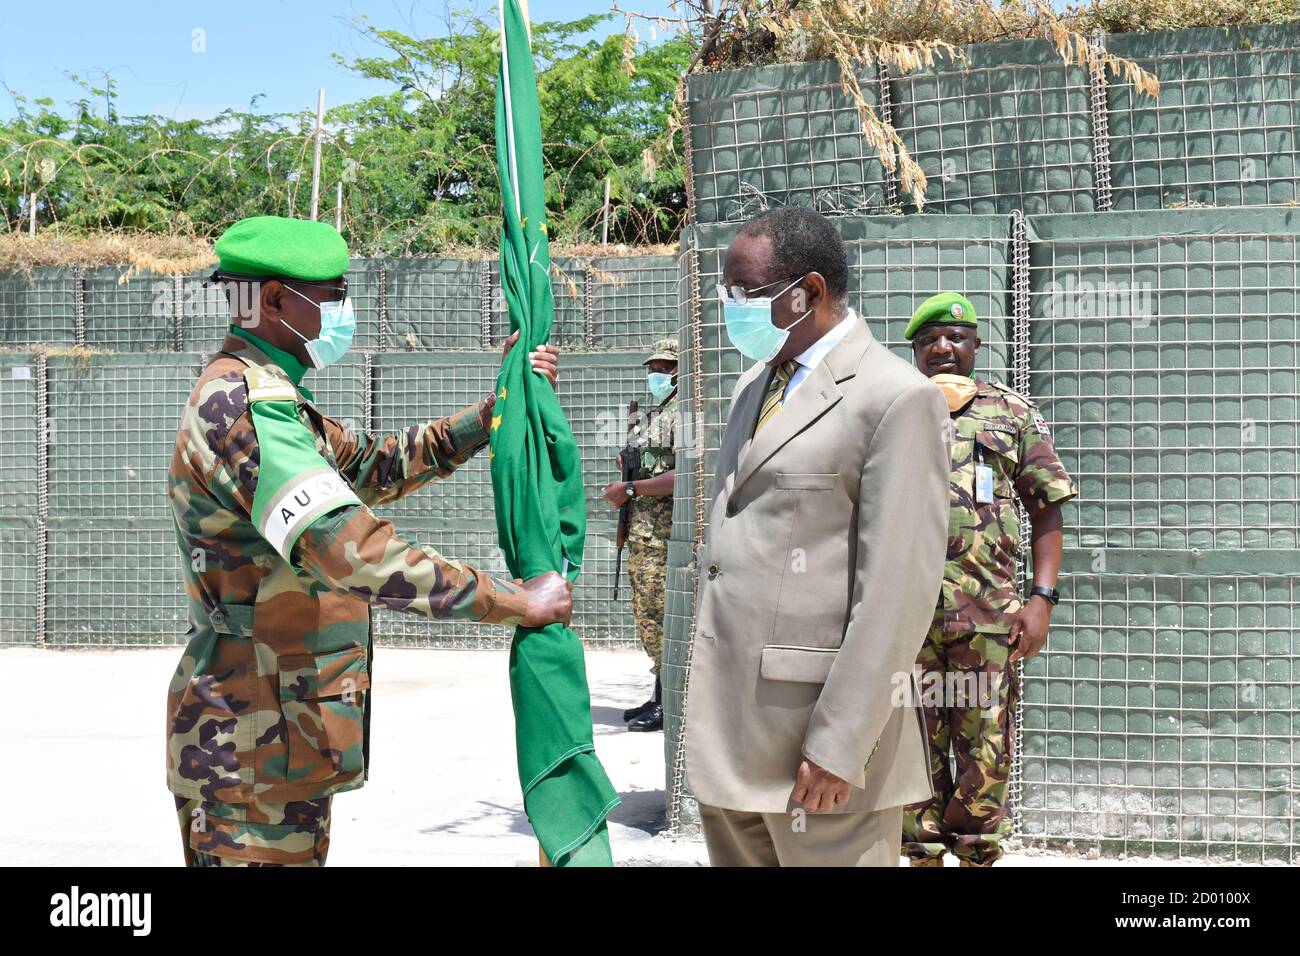 El Teniente General Tigabu Yilma (derecha), Comandante saliente de la Fuerza de la Misión de la Unión Africana en Somalia (AMISOM), entrega la bandera de la Unión Africana al Embajador Francisco Madeira, Representante Especial del Presidente de la Comisión de la Unión Africana (SRCC) para Somalia, durante una ceremonia de entrega celebrada en Mogadishu, Somalia, El 31 de agosto de 2020. Foto de stock